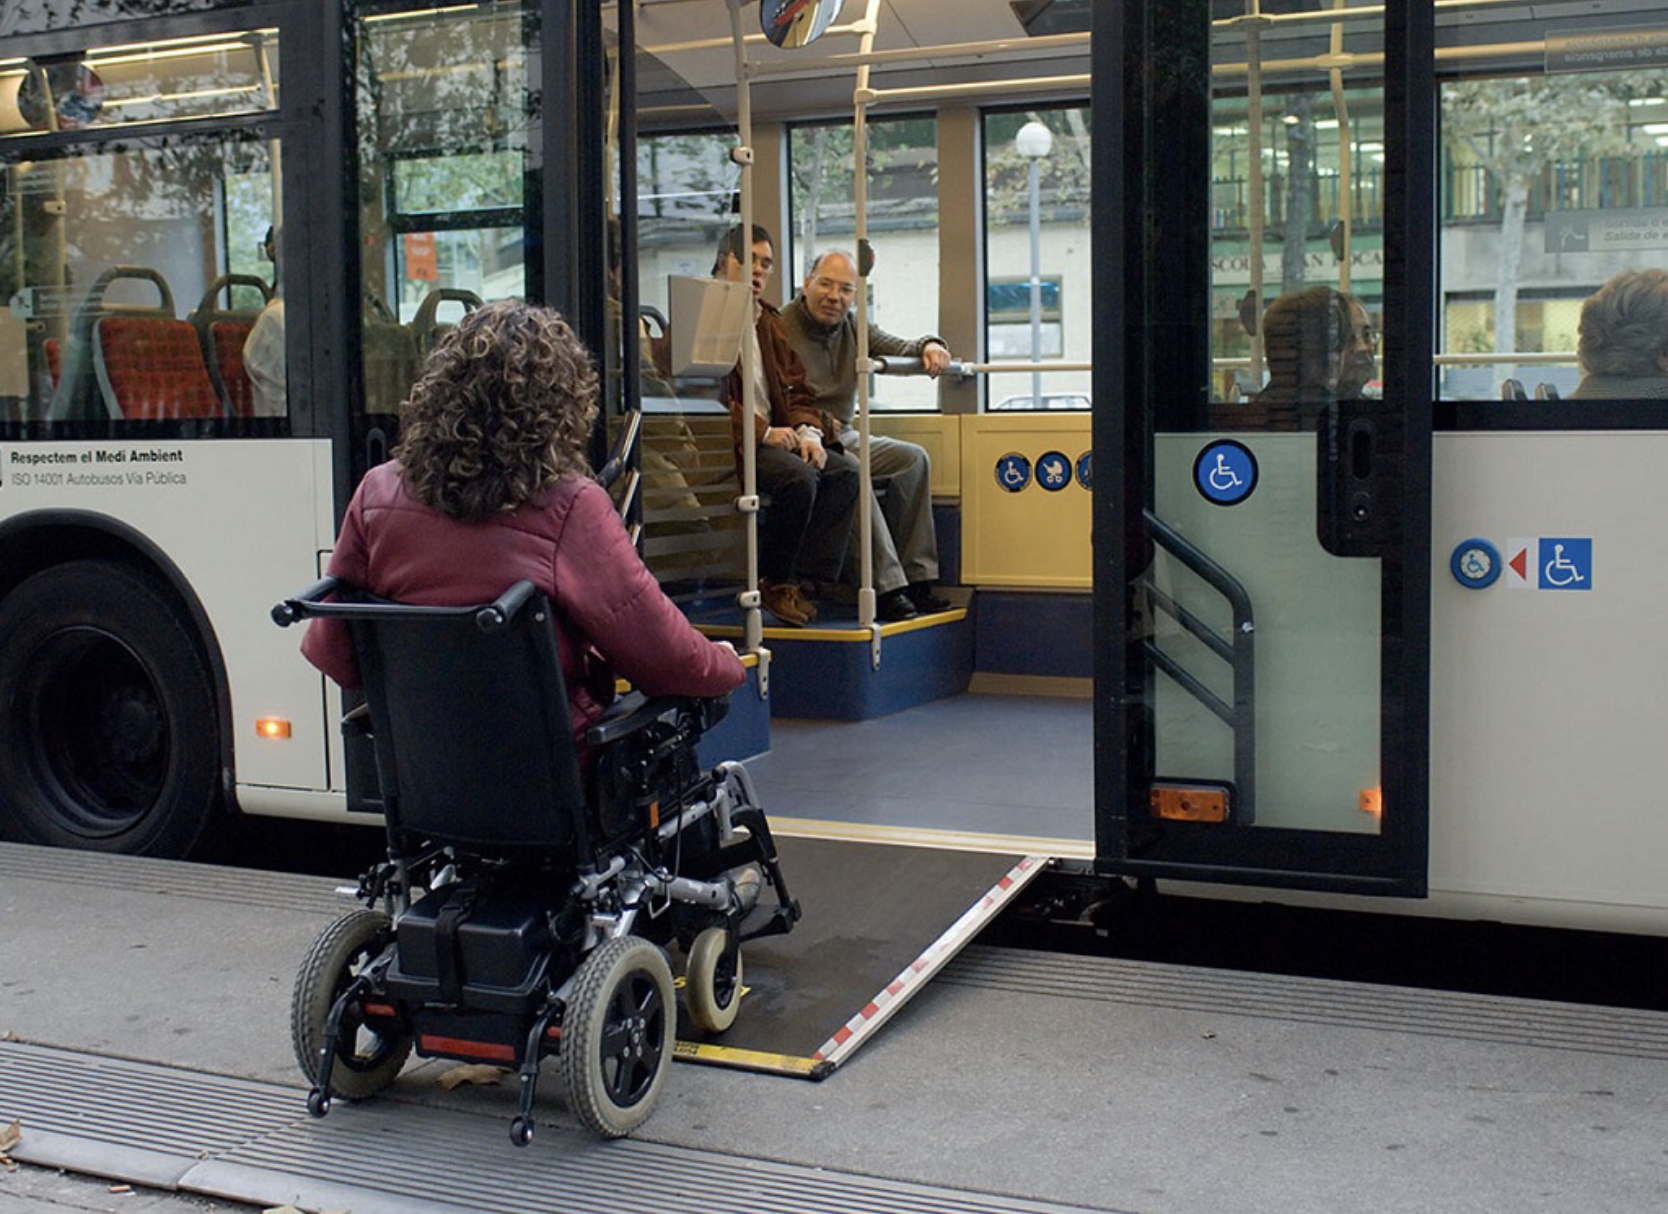 Перевозка льготного. Общественный транспорт для инвалидов. Автобус для инвалидов. Транспорт для маломобильных людей. Транспорт для людей с ограниченными возможностями.